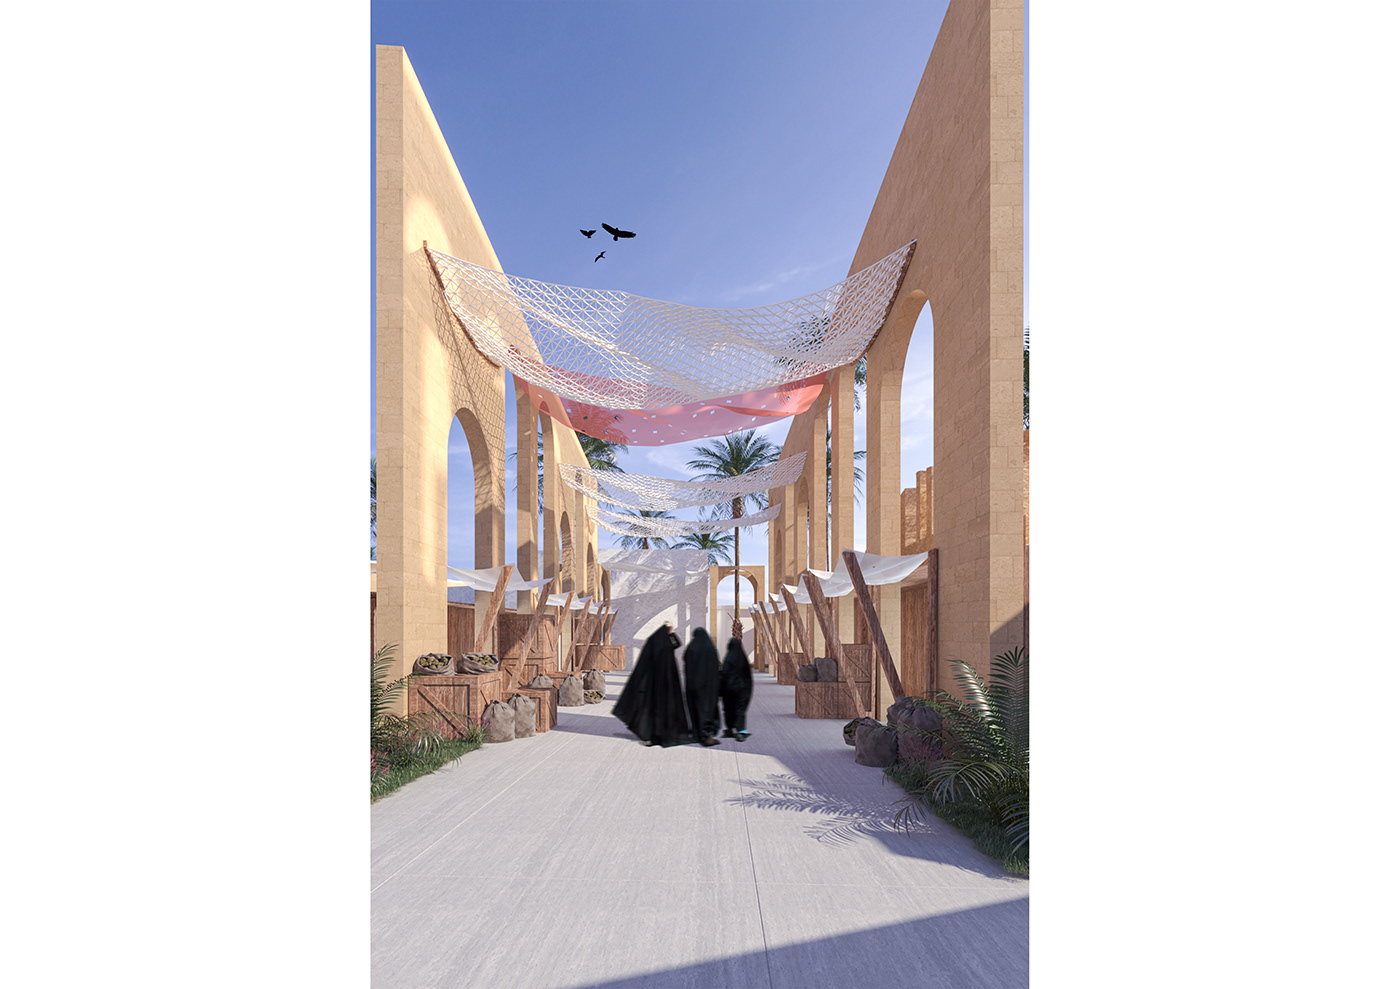 3D architecture architecturecompetition culture heritage identity Mosul Iraq rehabilitation UNESCO visualization